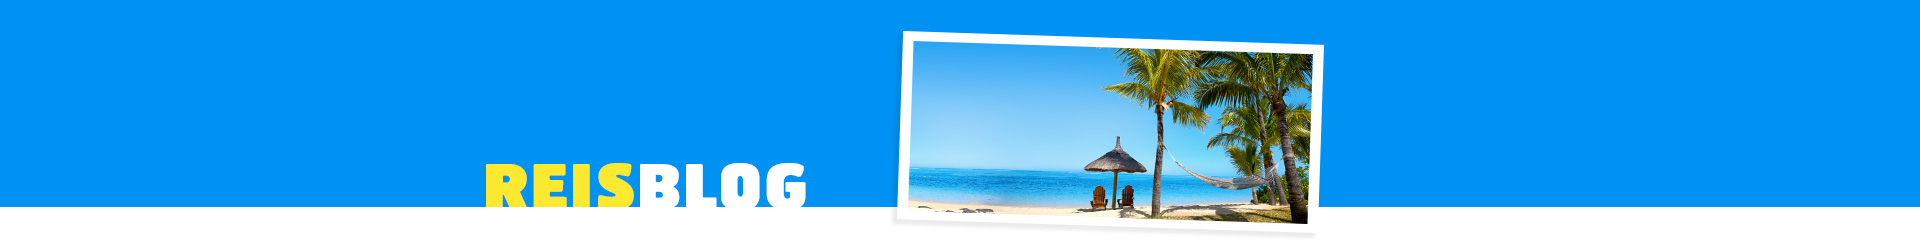 Prachtig wit strand met wuivende palmbomen en azuurblauwe zee.